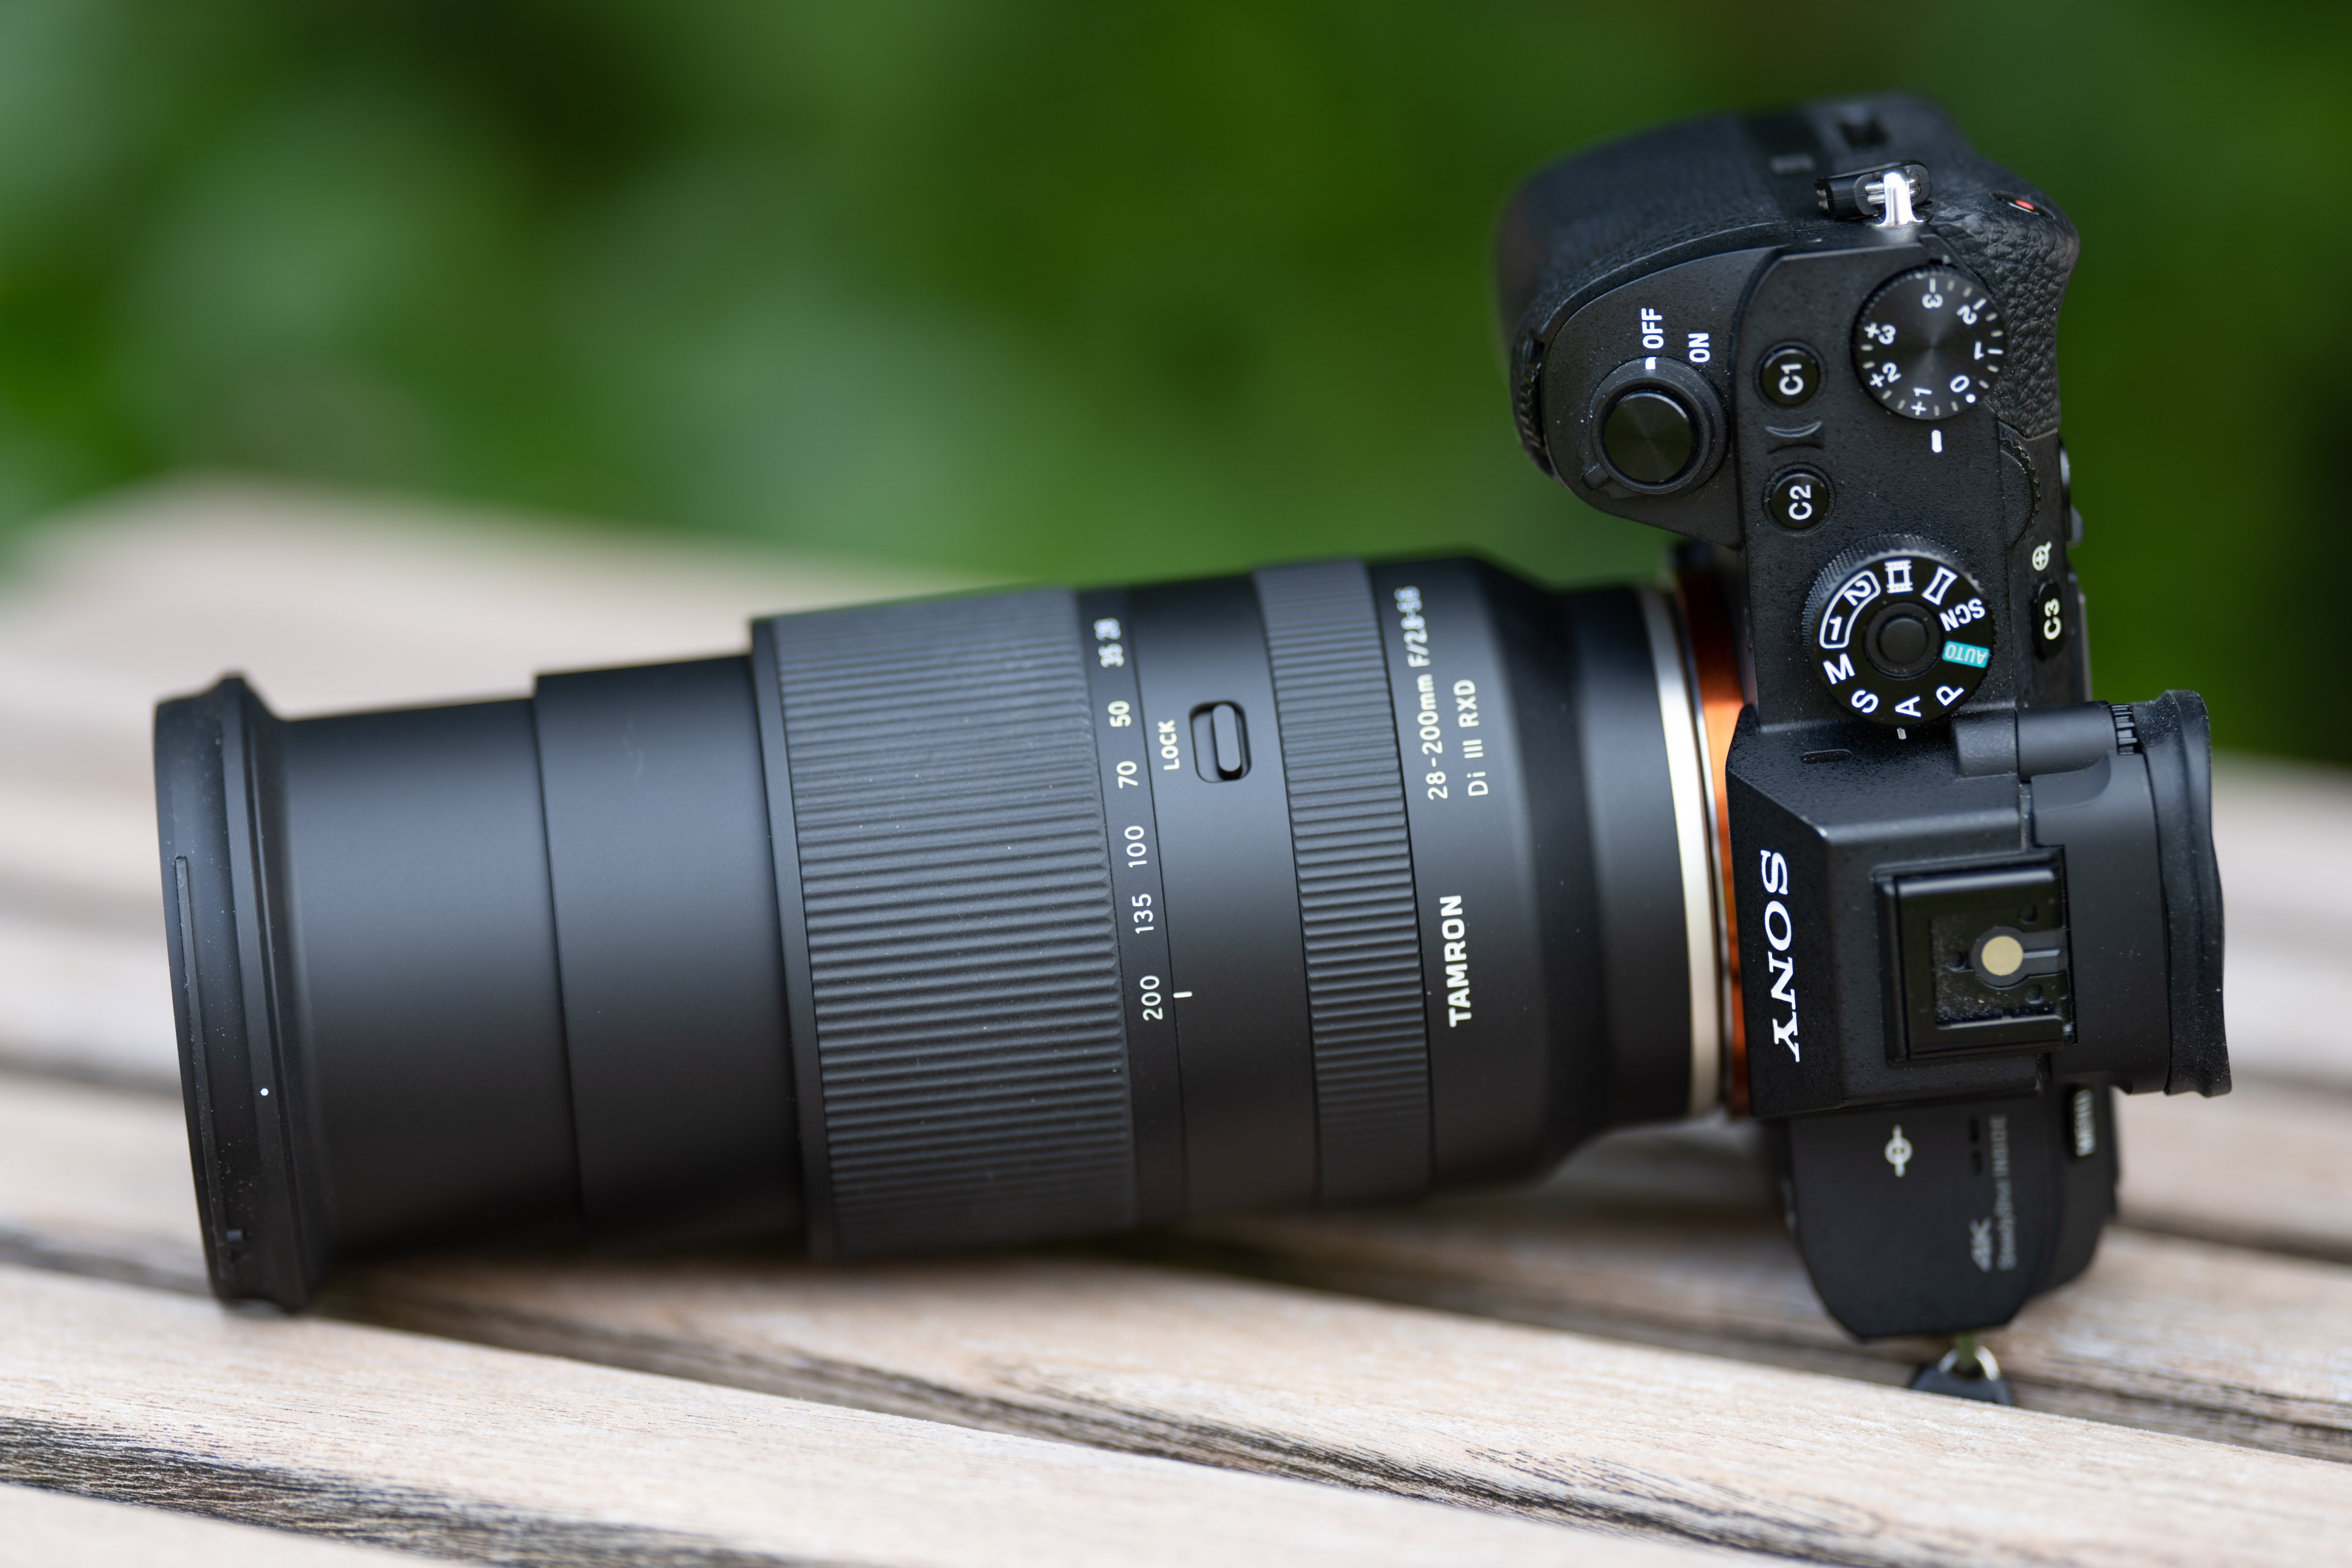 Ống kính Tamron AF 28-200mm F2.8 - 5.6 Di III cho Sony E